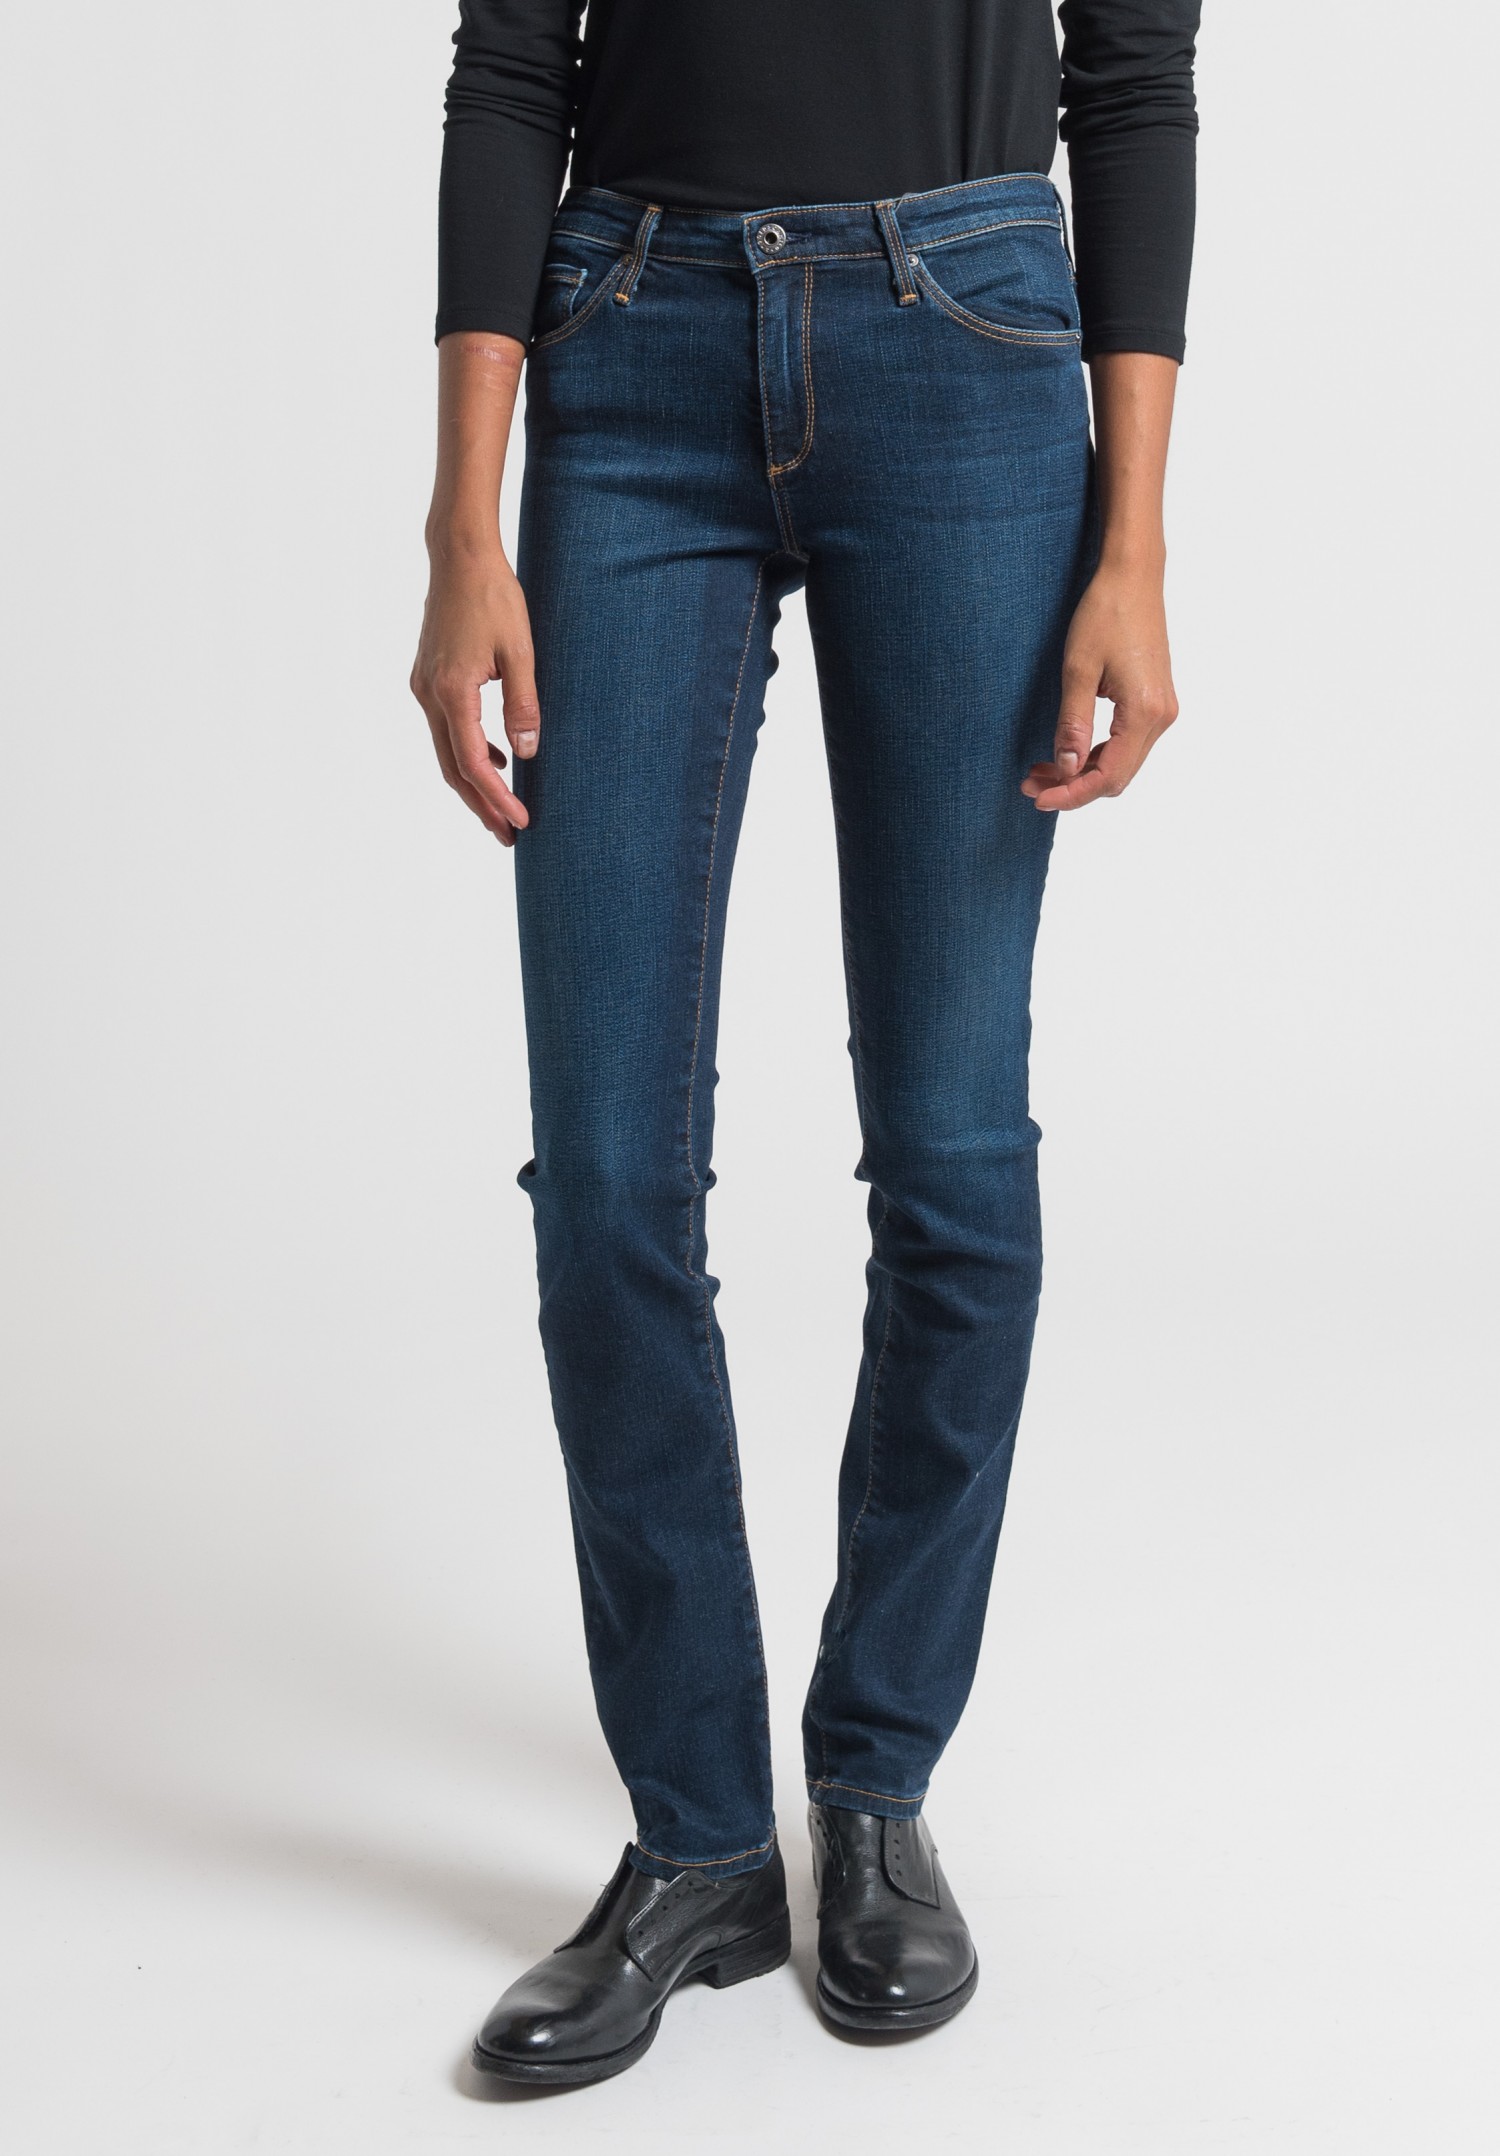 AG Harper Jeans in Indigo Blue | Santa Fe Dry Goods